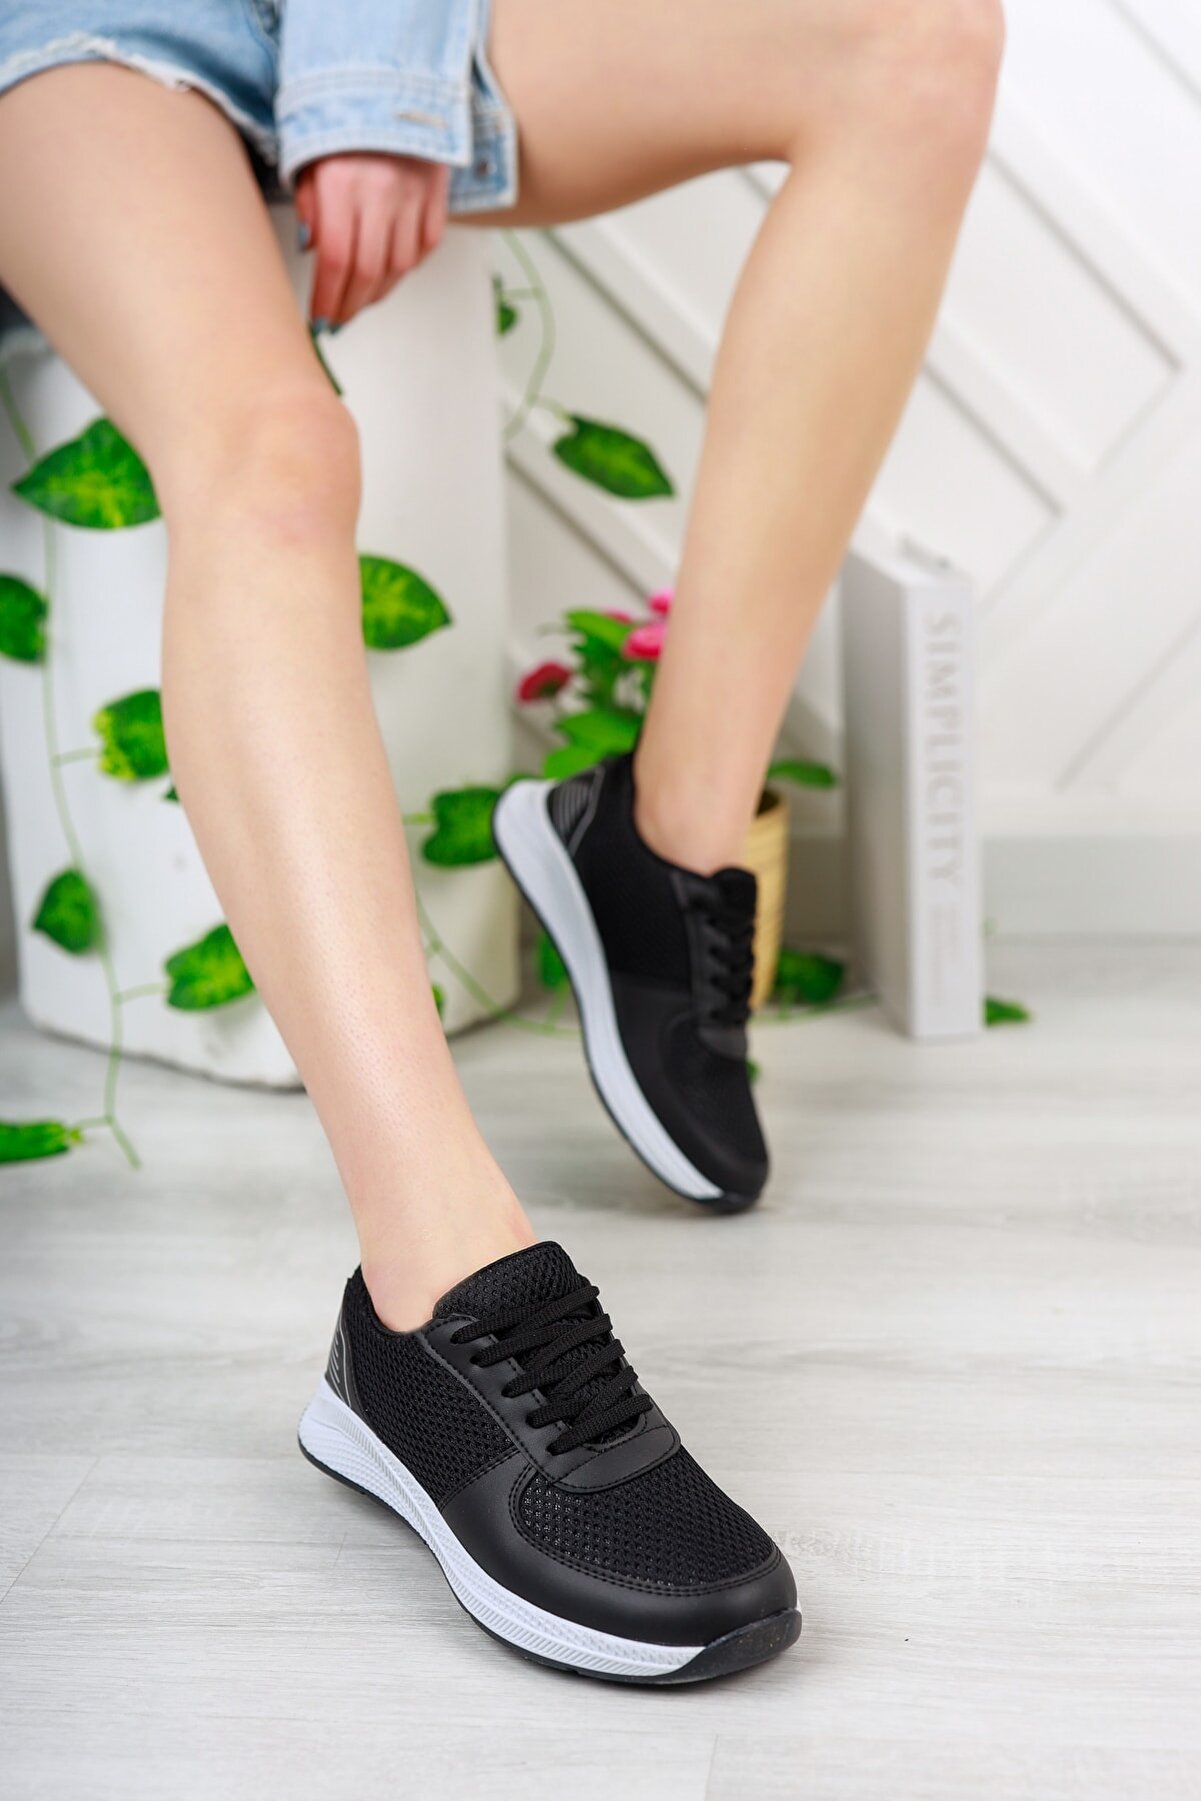 STOCON Kadın Yeni Sezon Günlük Sneaker Spor Ayakkabı Siyah